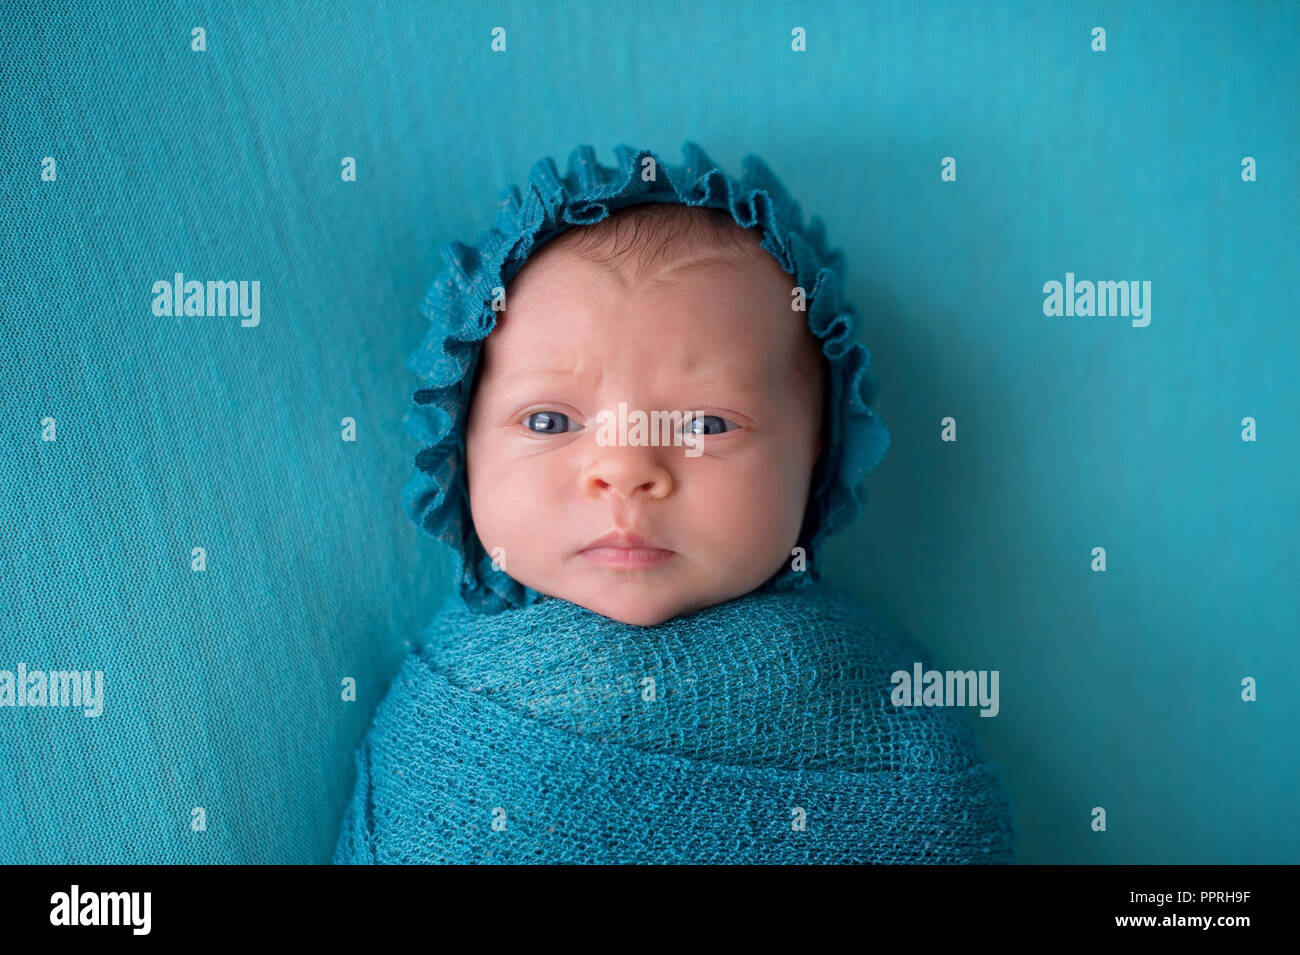 Eine Warnung, 3 Woche alt, neugeborene Mädchen mit einem türkisblauen Motorhaube mit einen verdutzten Ausdruck. Stockfoto